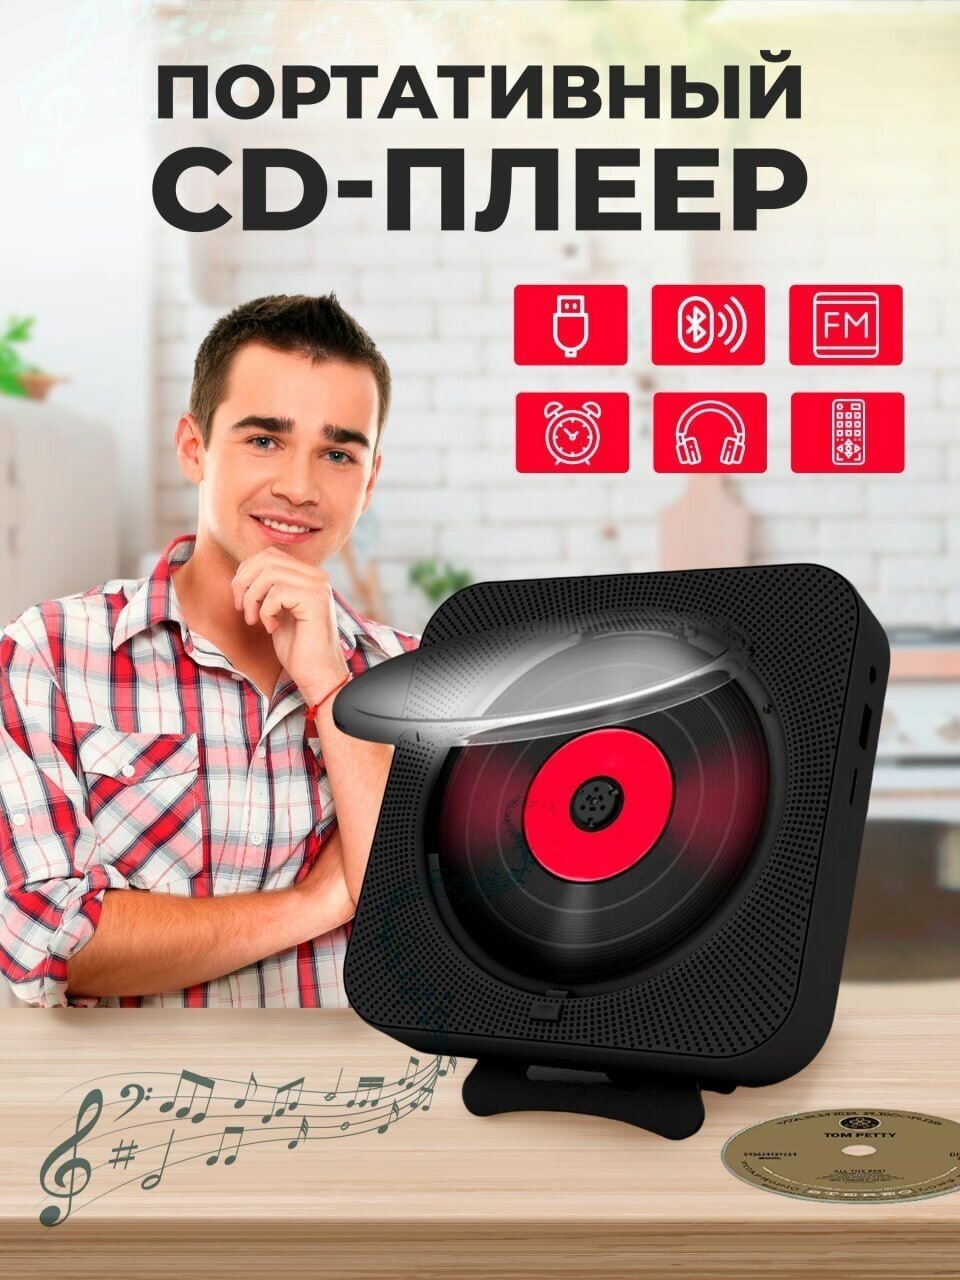 Портативный CD плеер с пультом управления Радио, CD, USB, MP3, Bluetooth, SD карта, AUX — купить в интернет-магазине по низкой цене на Яндекс Маркете